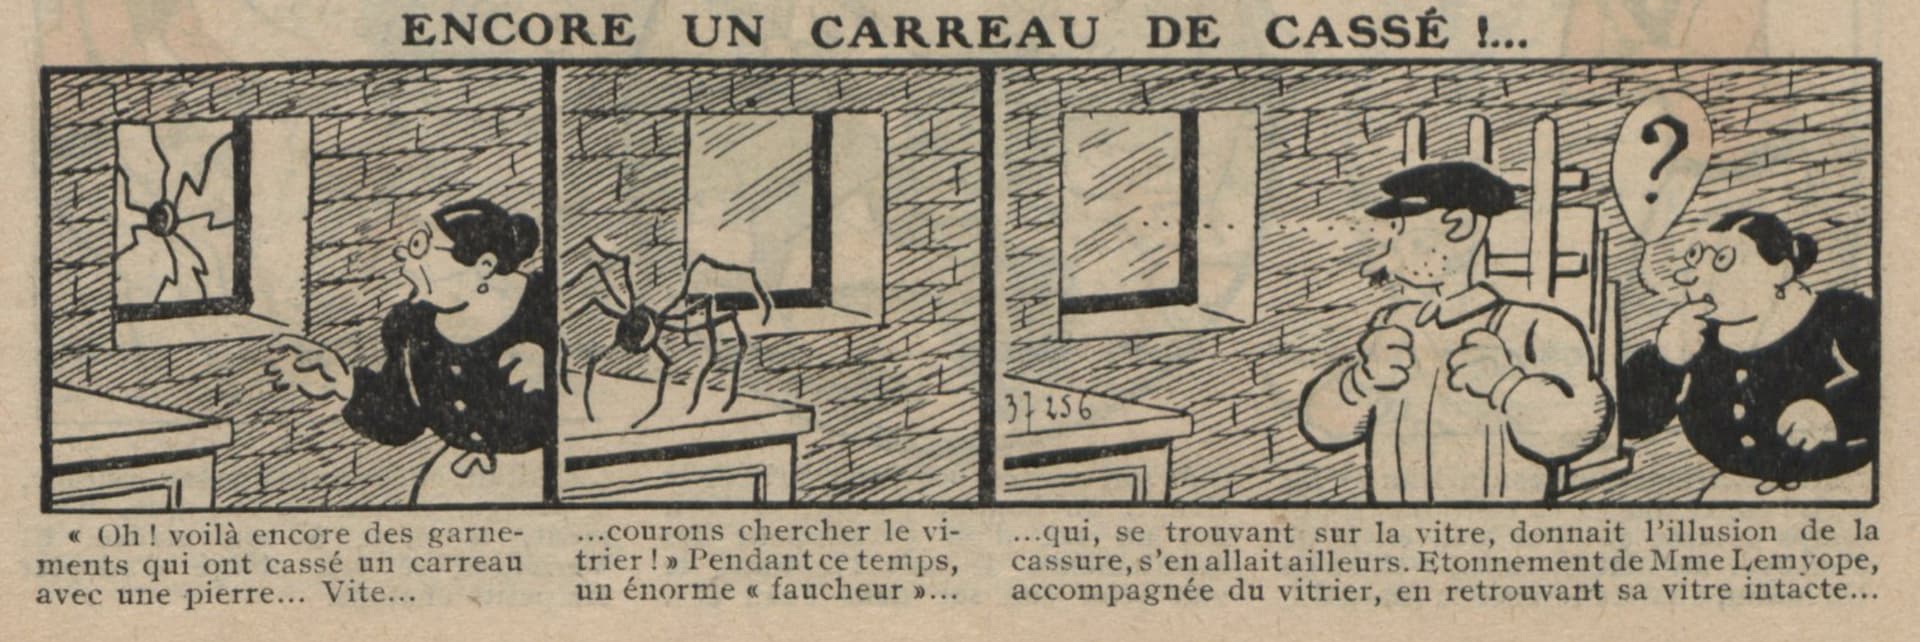 Guignol 1932 - n°203 - Encore un carreau de cassé ! - 21 août 1932 - page 45